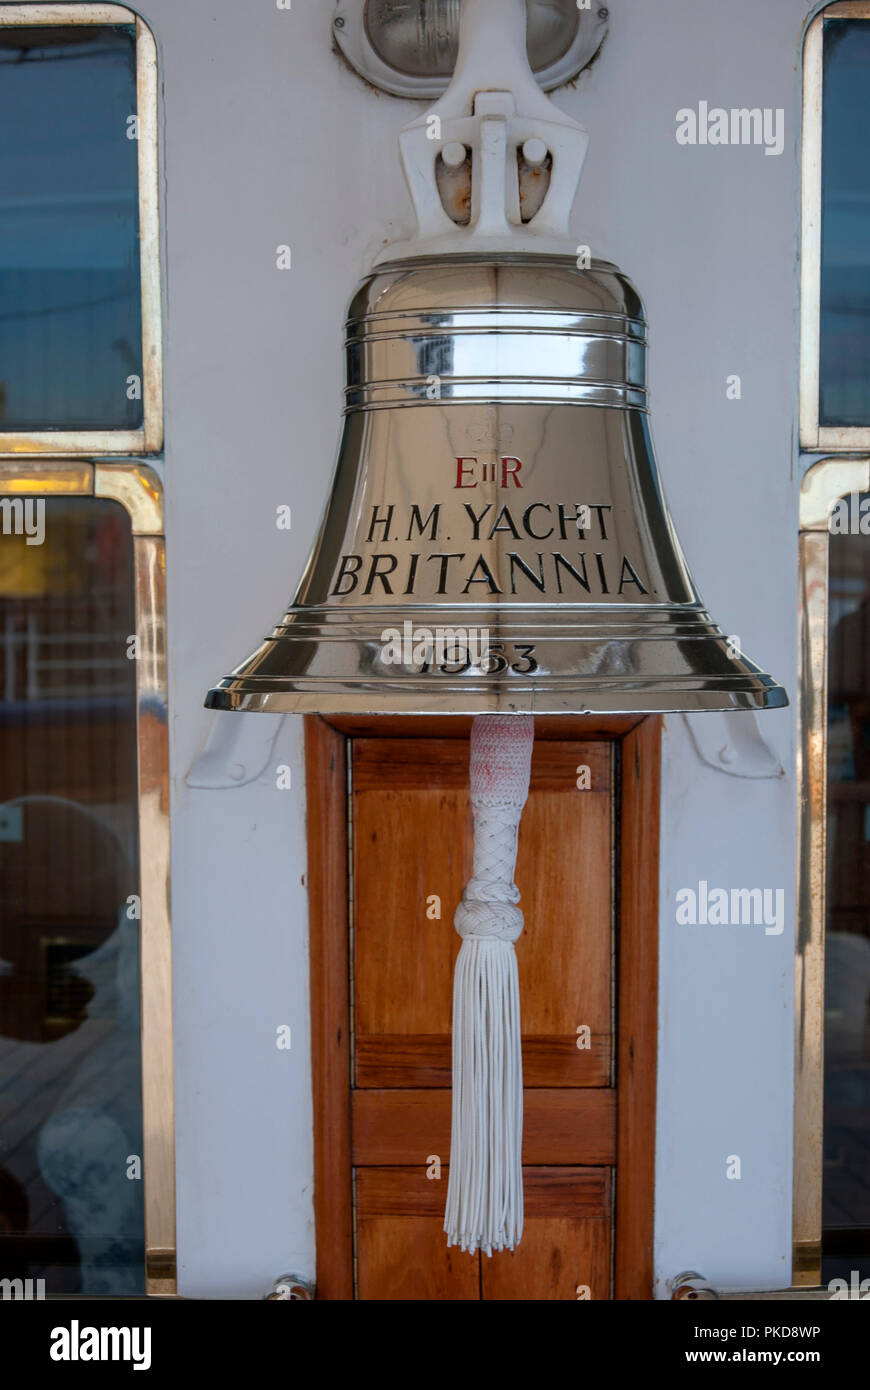 Silber Schiffsglocke S.M. Yacht Britannia Leith Edinburgh Schottland Großbritannien detaillierte Nahaufnahme der Silber Schiffsglocke eingeschrieben E11 R S.M. Yacht Britannia 1953 Stockfoto